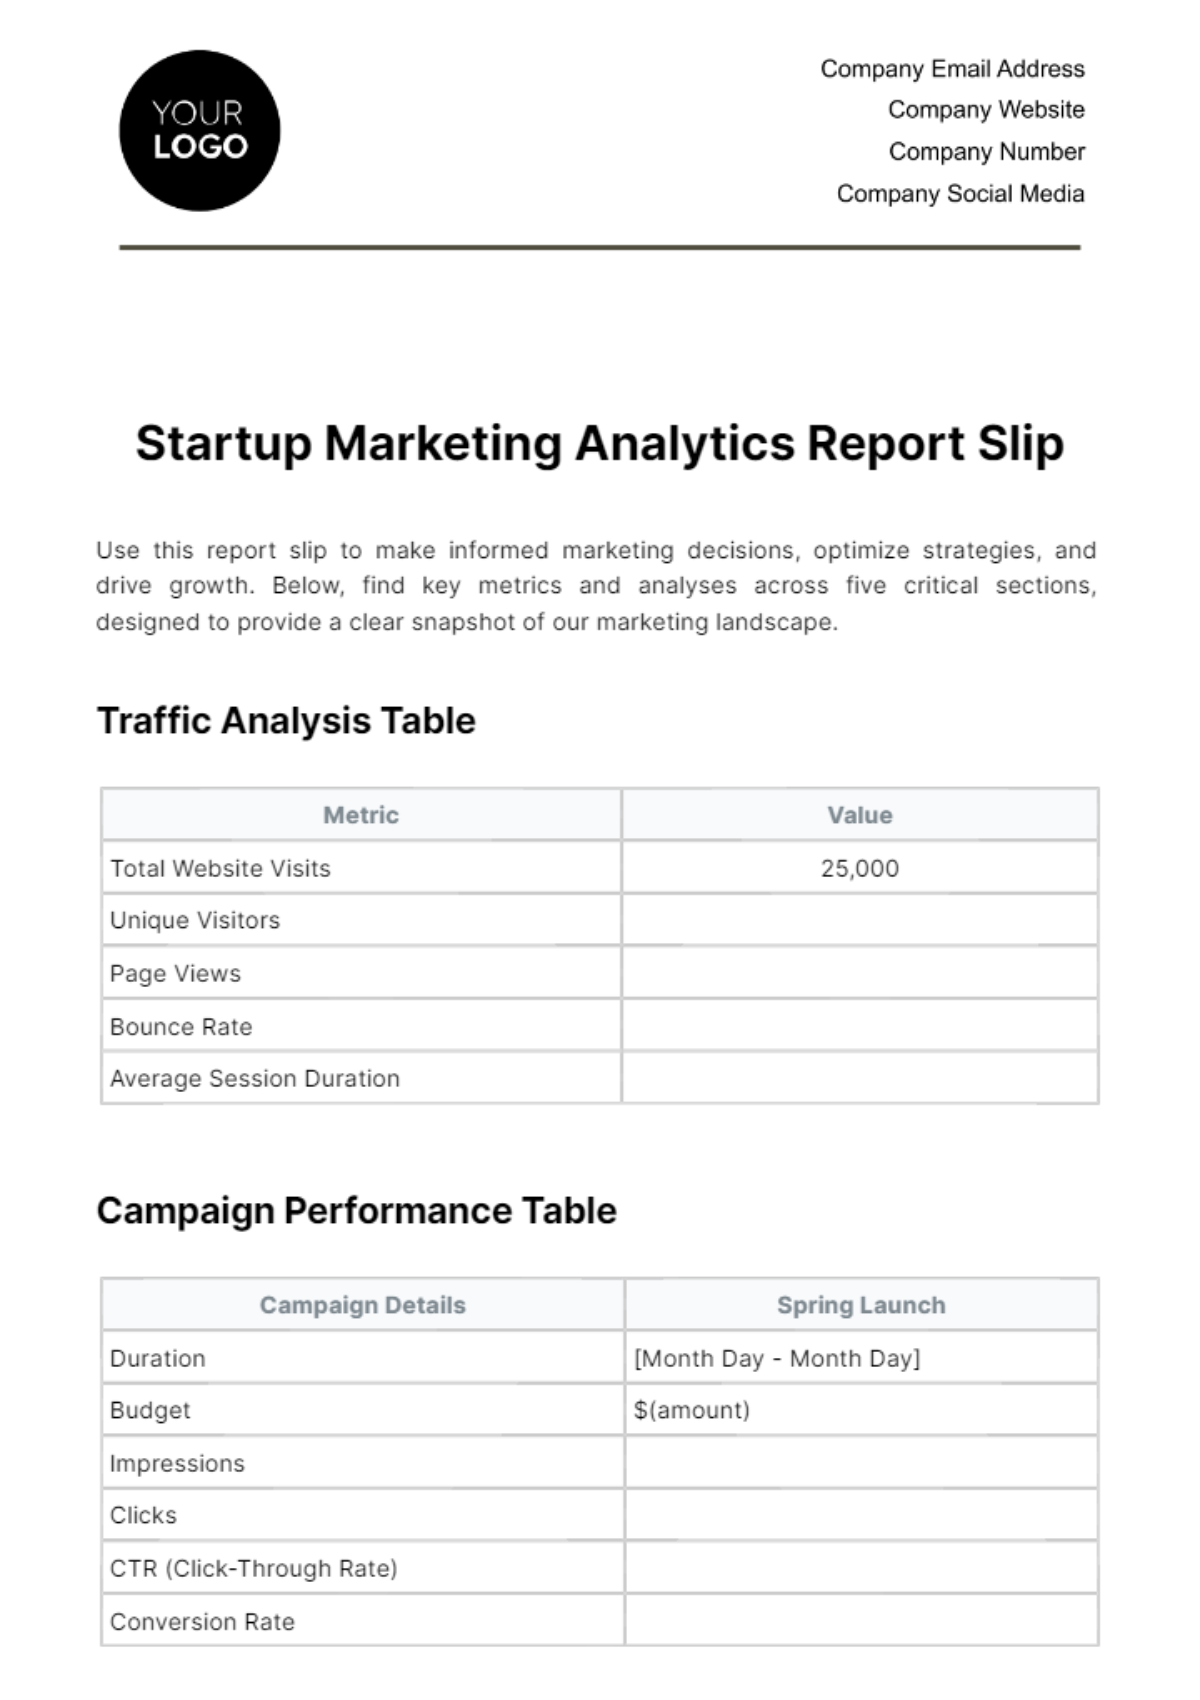 Free Startup Marketing Analytics Report Slip Template